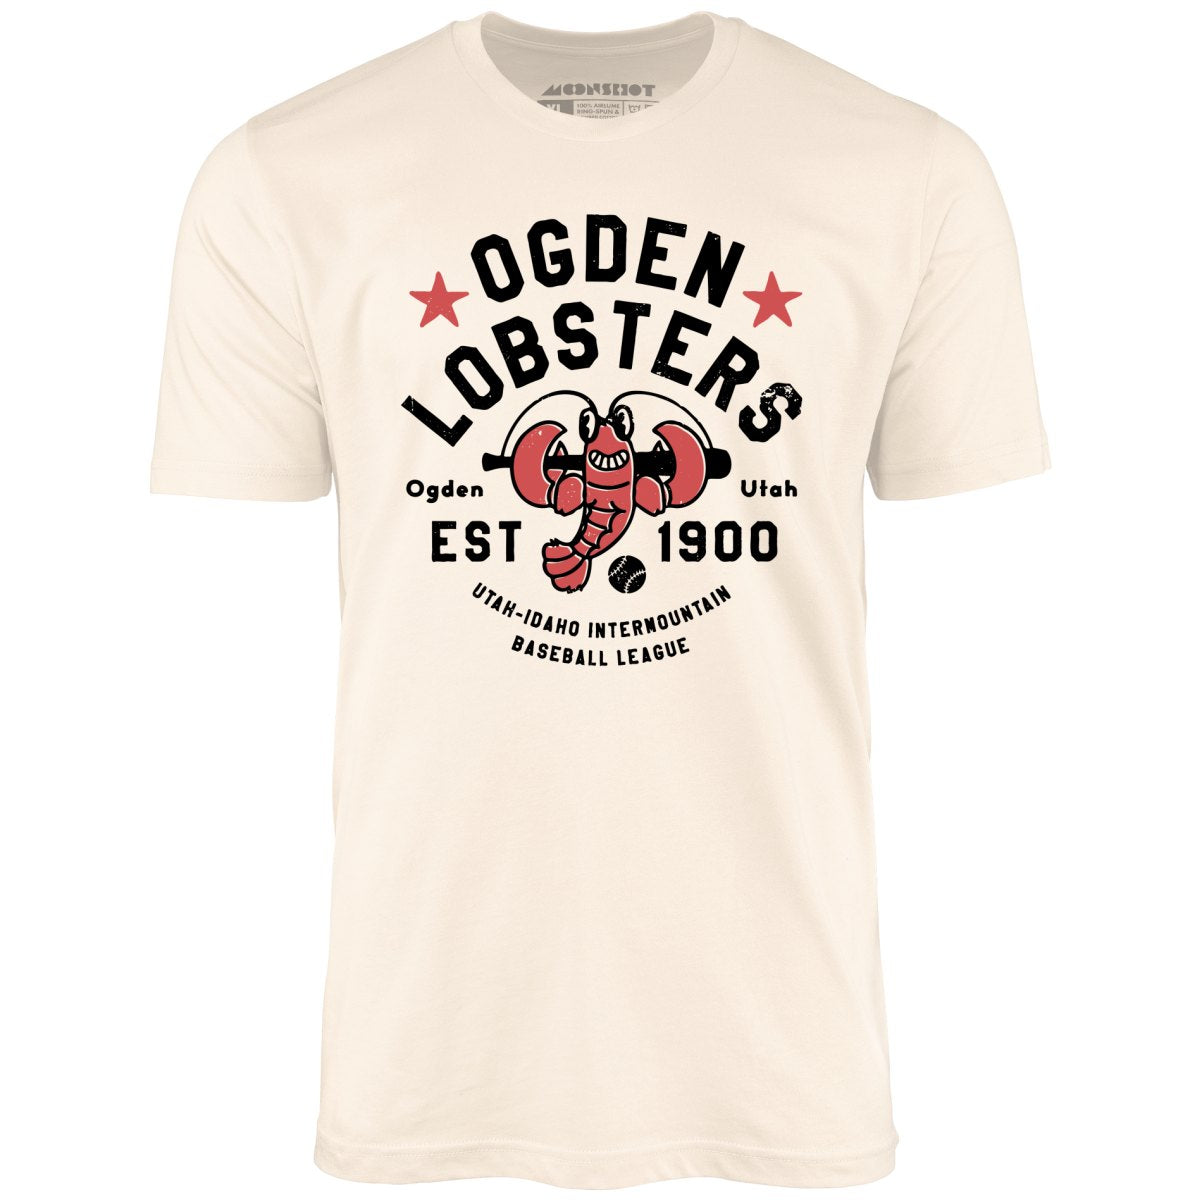 Ogden Lobsters - Utah - Vintage Defunct Baseball Teams - Unisex T-Shirt